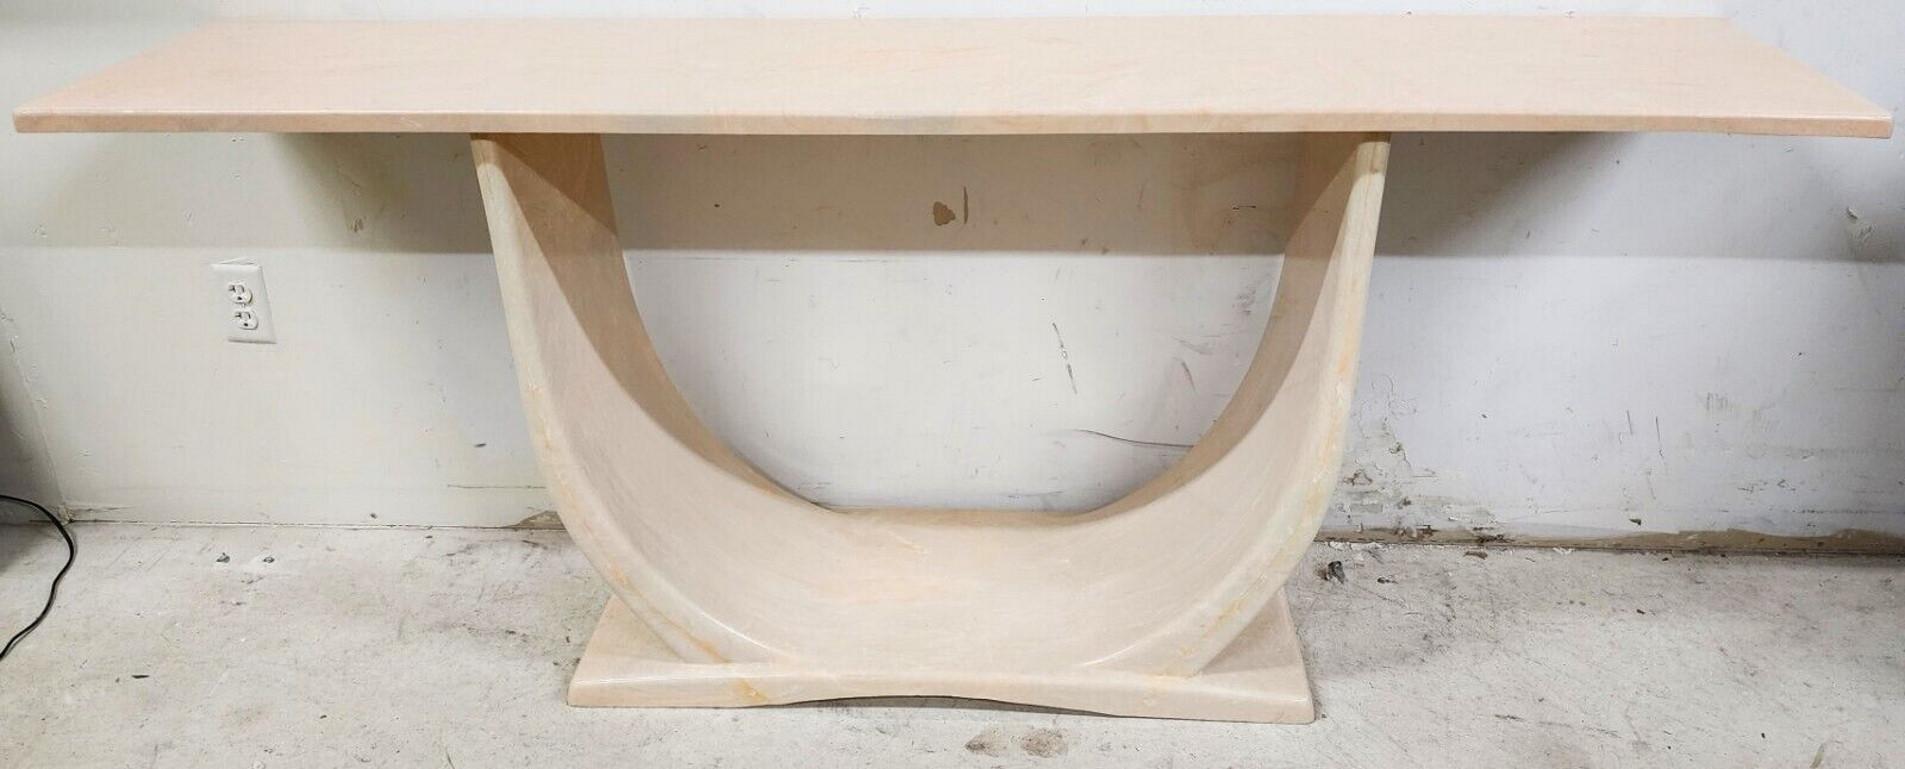 Nous vous proposons l'une de nos récentes acquisitions de meubles fins de palm beach estate d'un 
Table console pour canapé en polyrésine de style Karl Springer Sculptural
Meuble de qualité, très bien fait et très lourd.
La polyrésine est la même